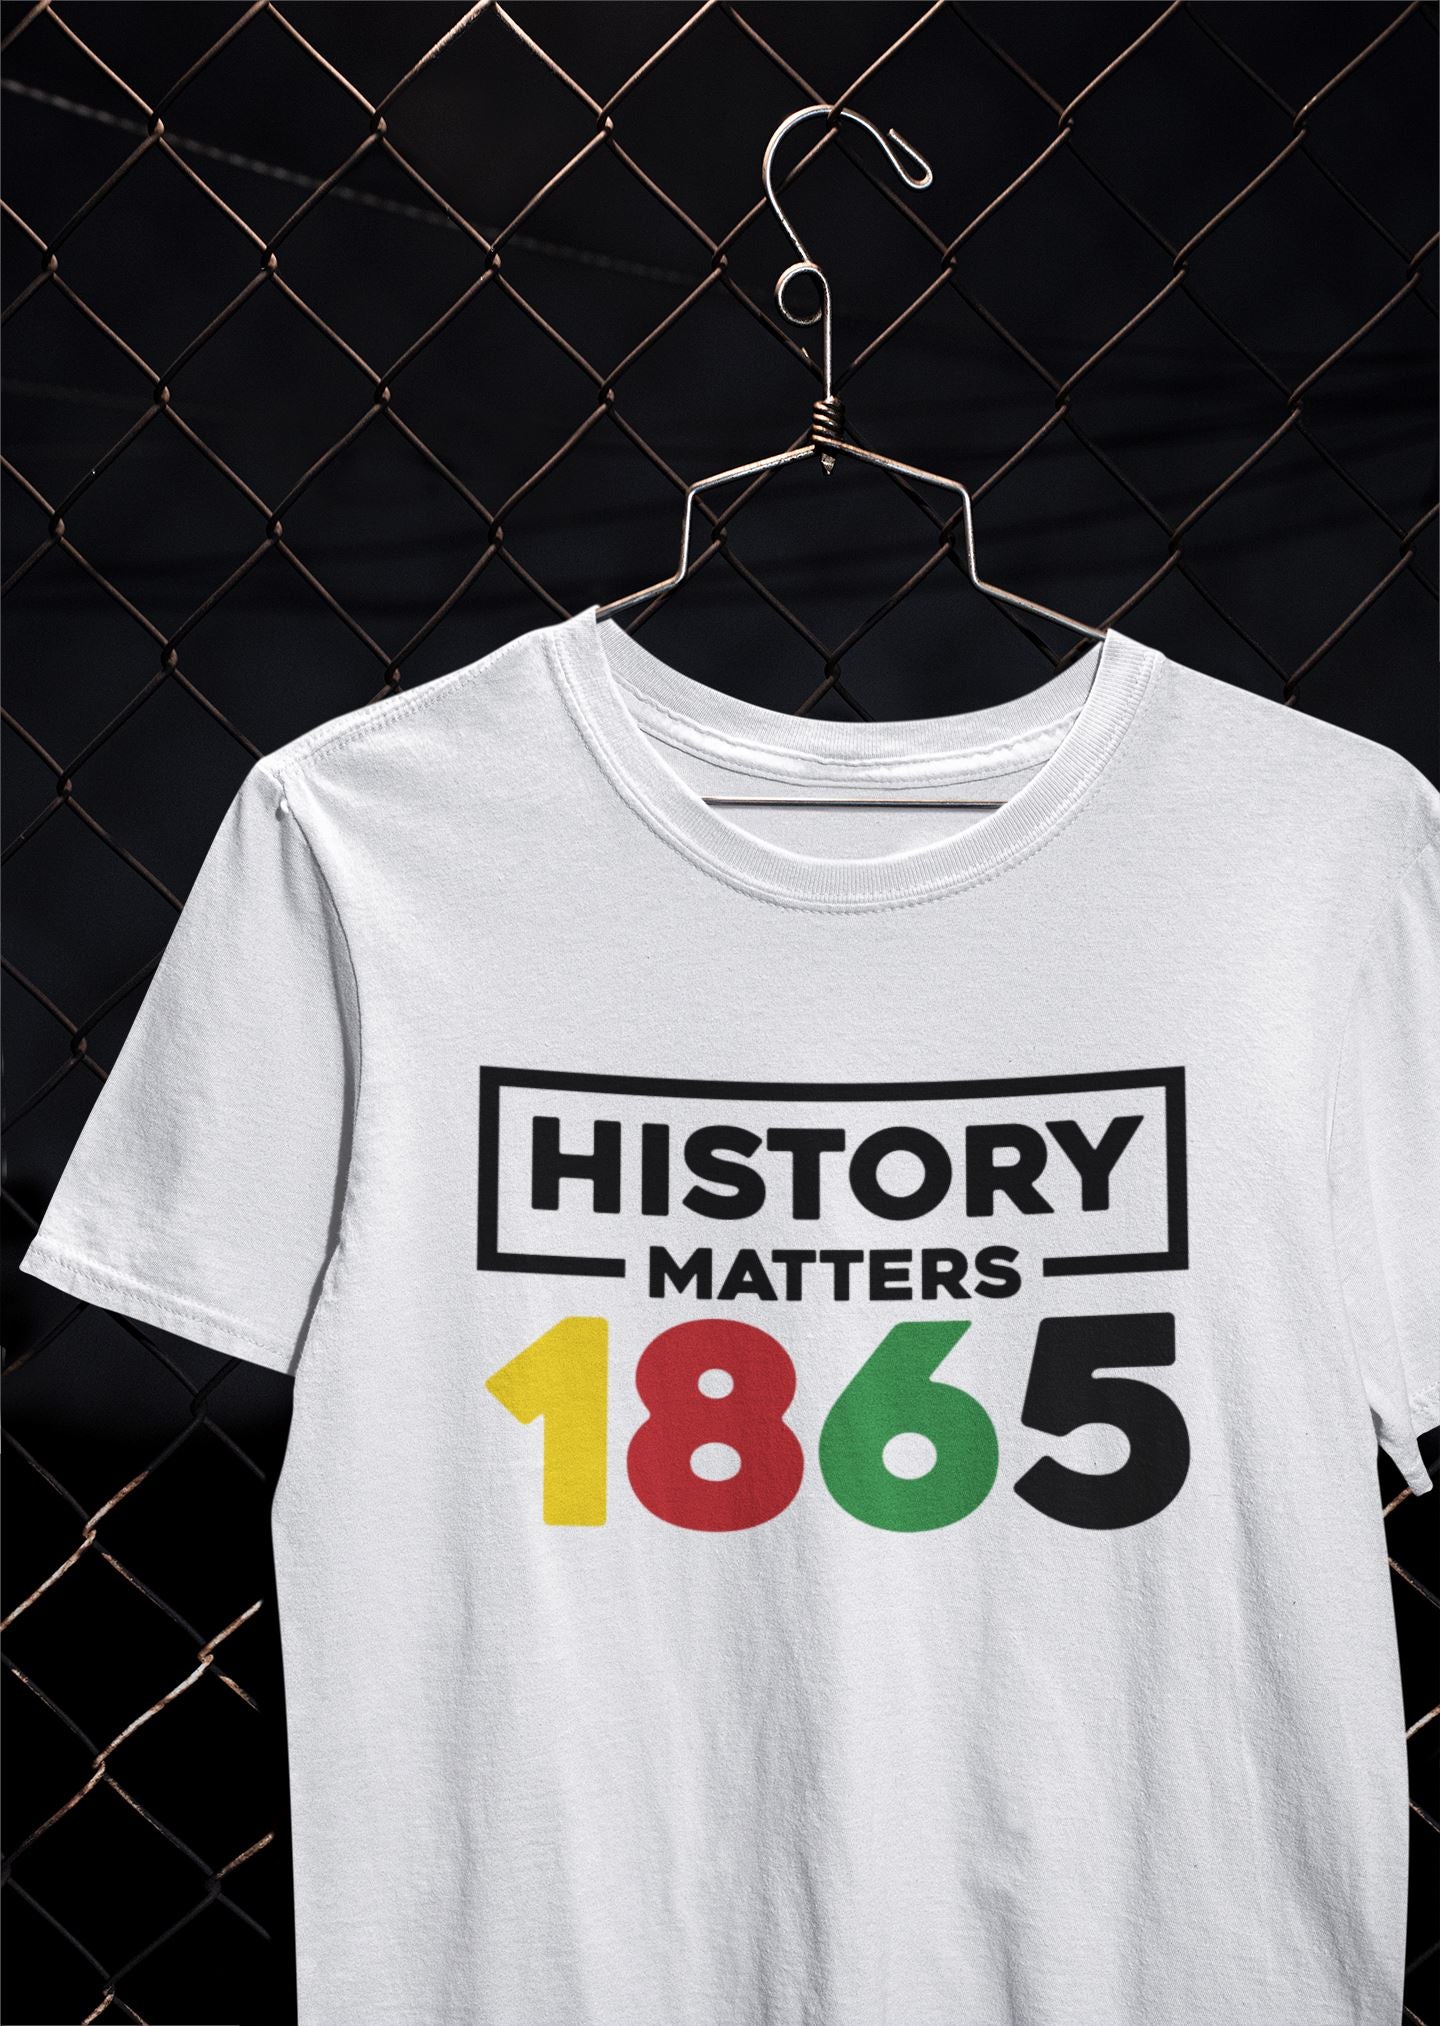 Juneteenth Shirt, 1865 T-Shirt B1ack By Design LLC 